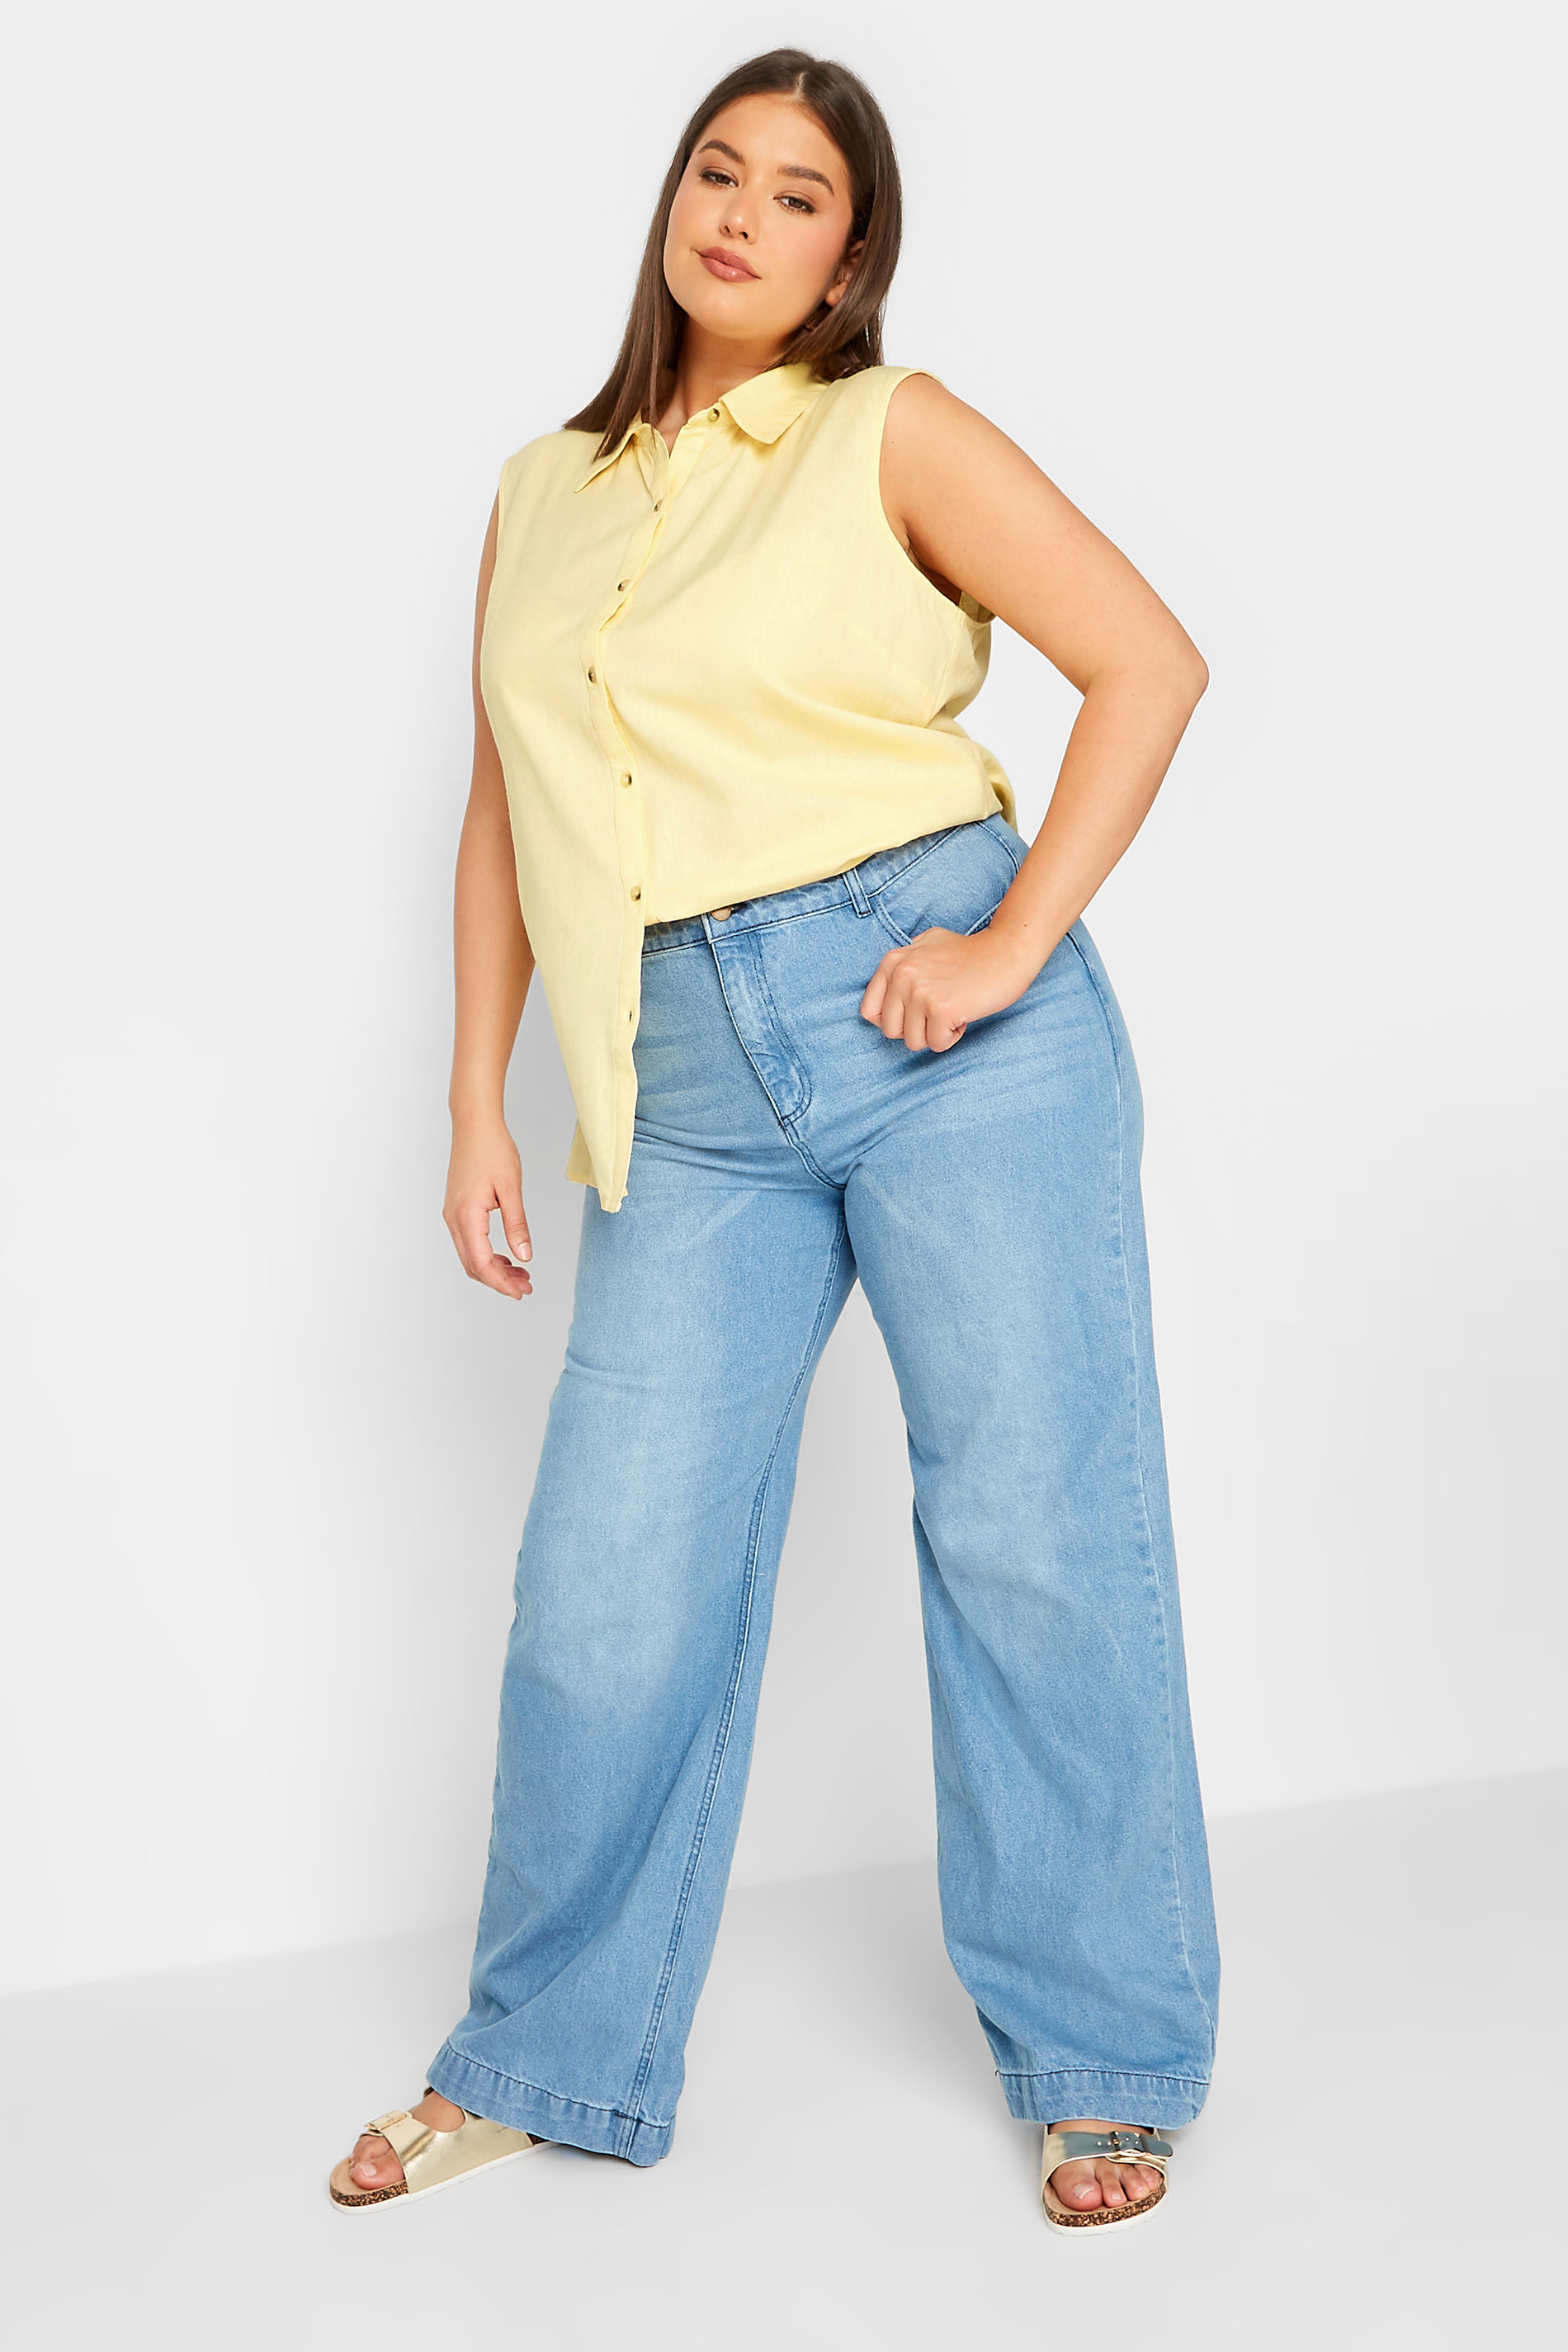 LTS Tall Women's Yellow Sleeveless Linen Shirt | Long Tall Sally  2